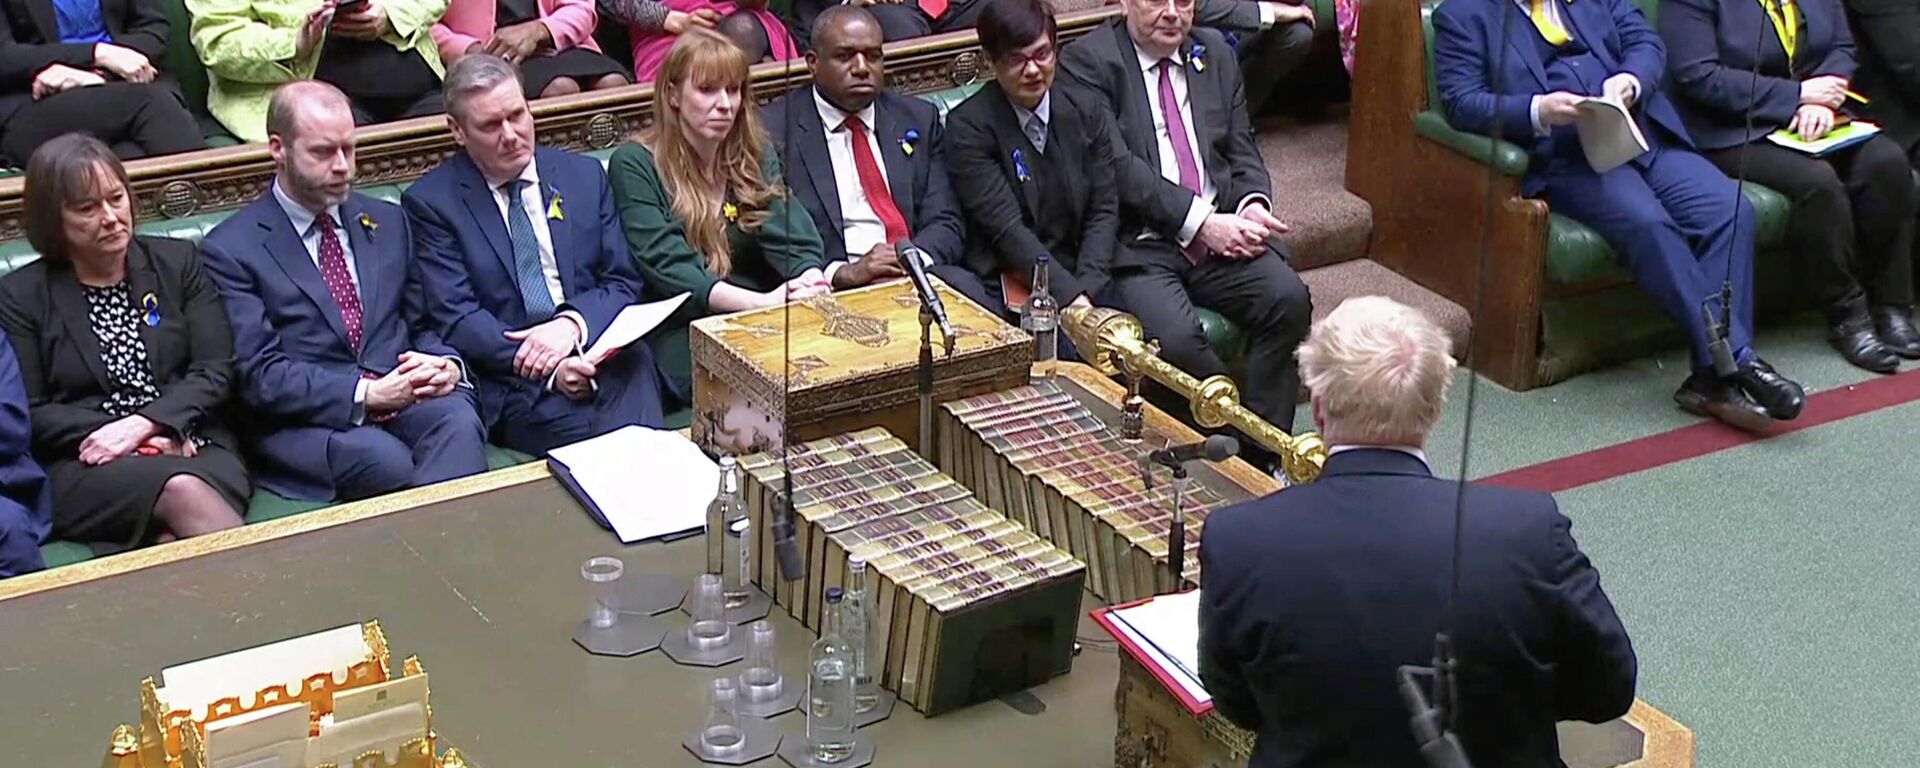 O primeiro-ministro britânico Boris Johnson fala durante o debate semanal de perguntas, em meio à crise na Ucrânia, no Parlamento em Londres, Reino Unido, 2 de março de 2022  - Sputnik Brasil, 1920, 02.03.2022